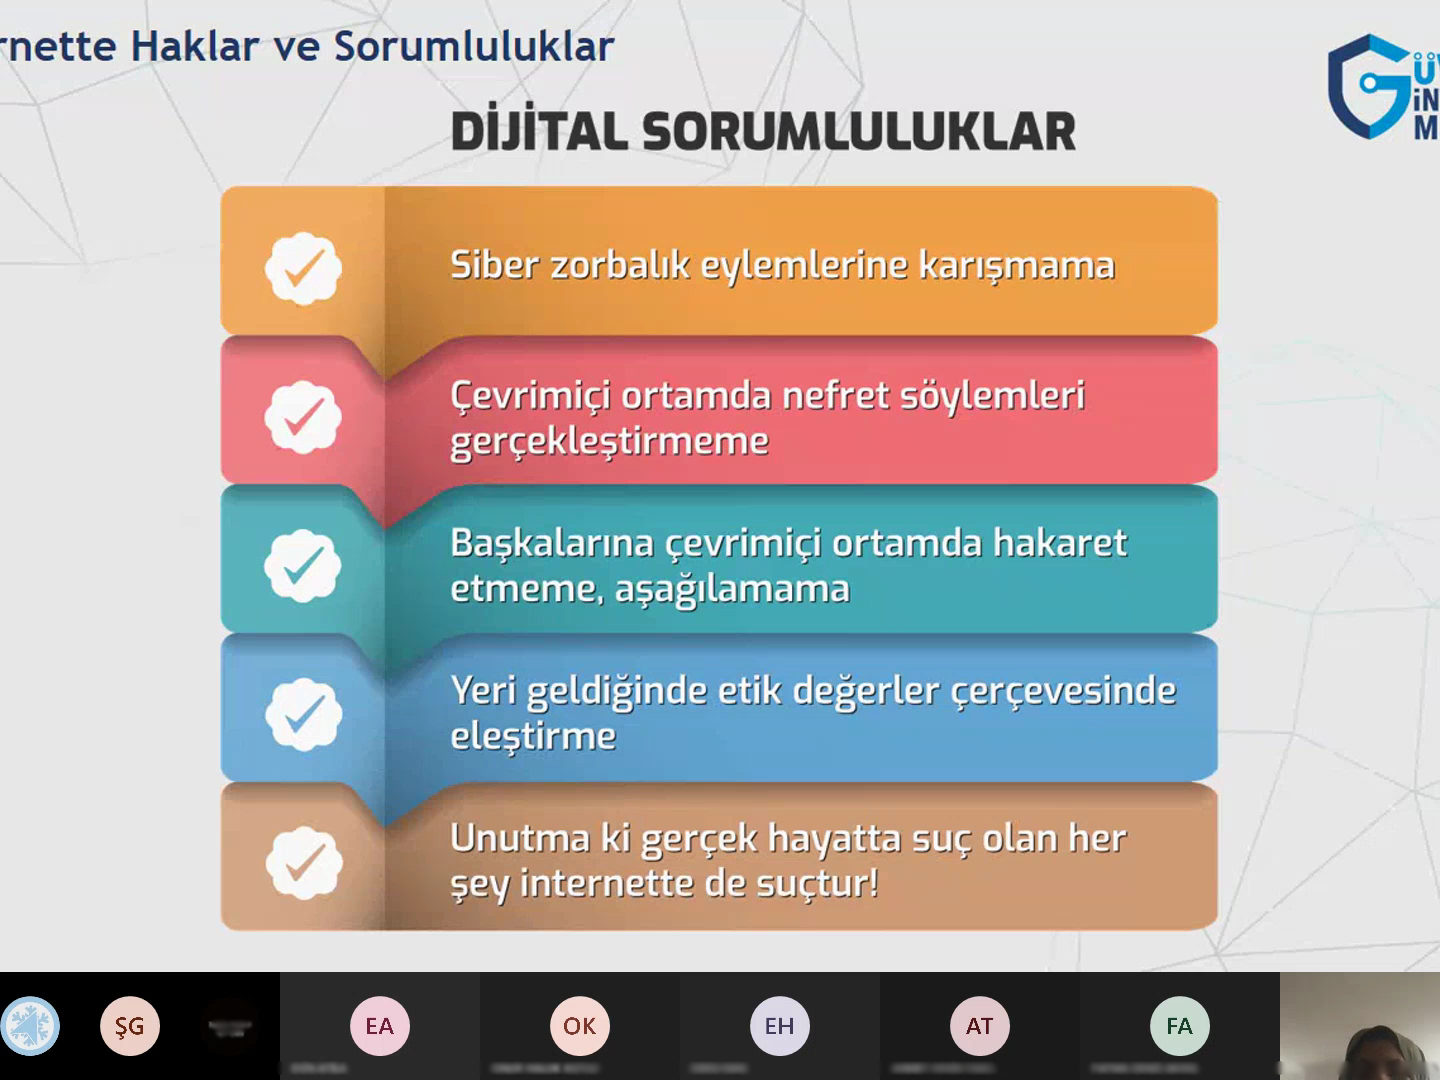 eTwinning Projesi Kapsamında Ankara Çankaya Hacı Ömer Tarman Anadolu Lisesi Öğrencilerine Yönelik Online Eğitim